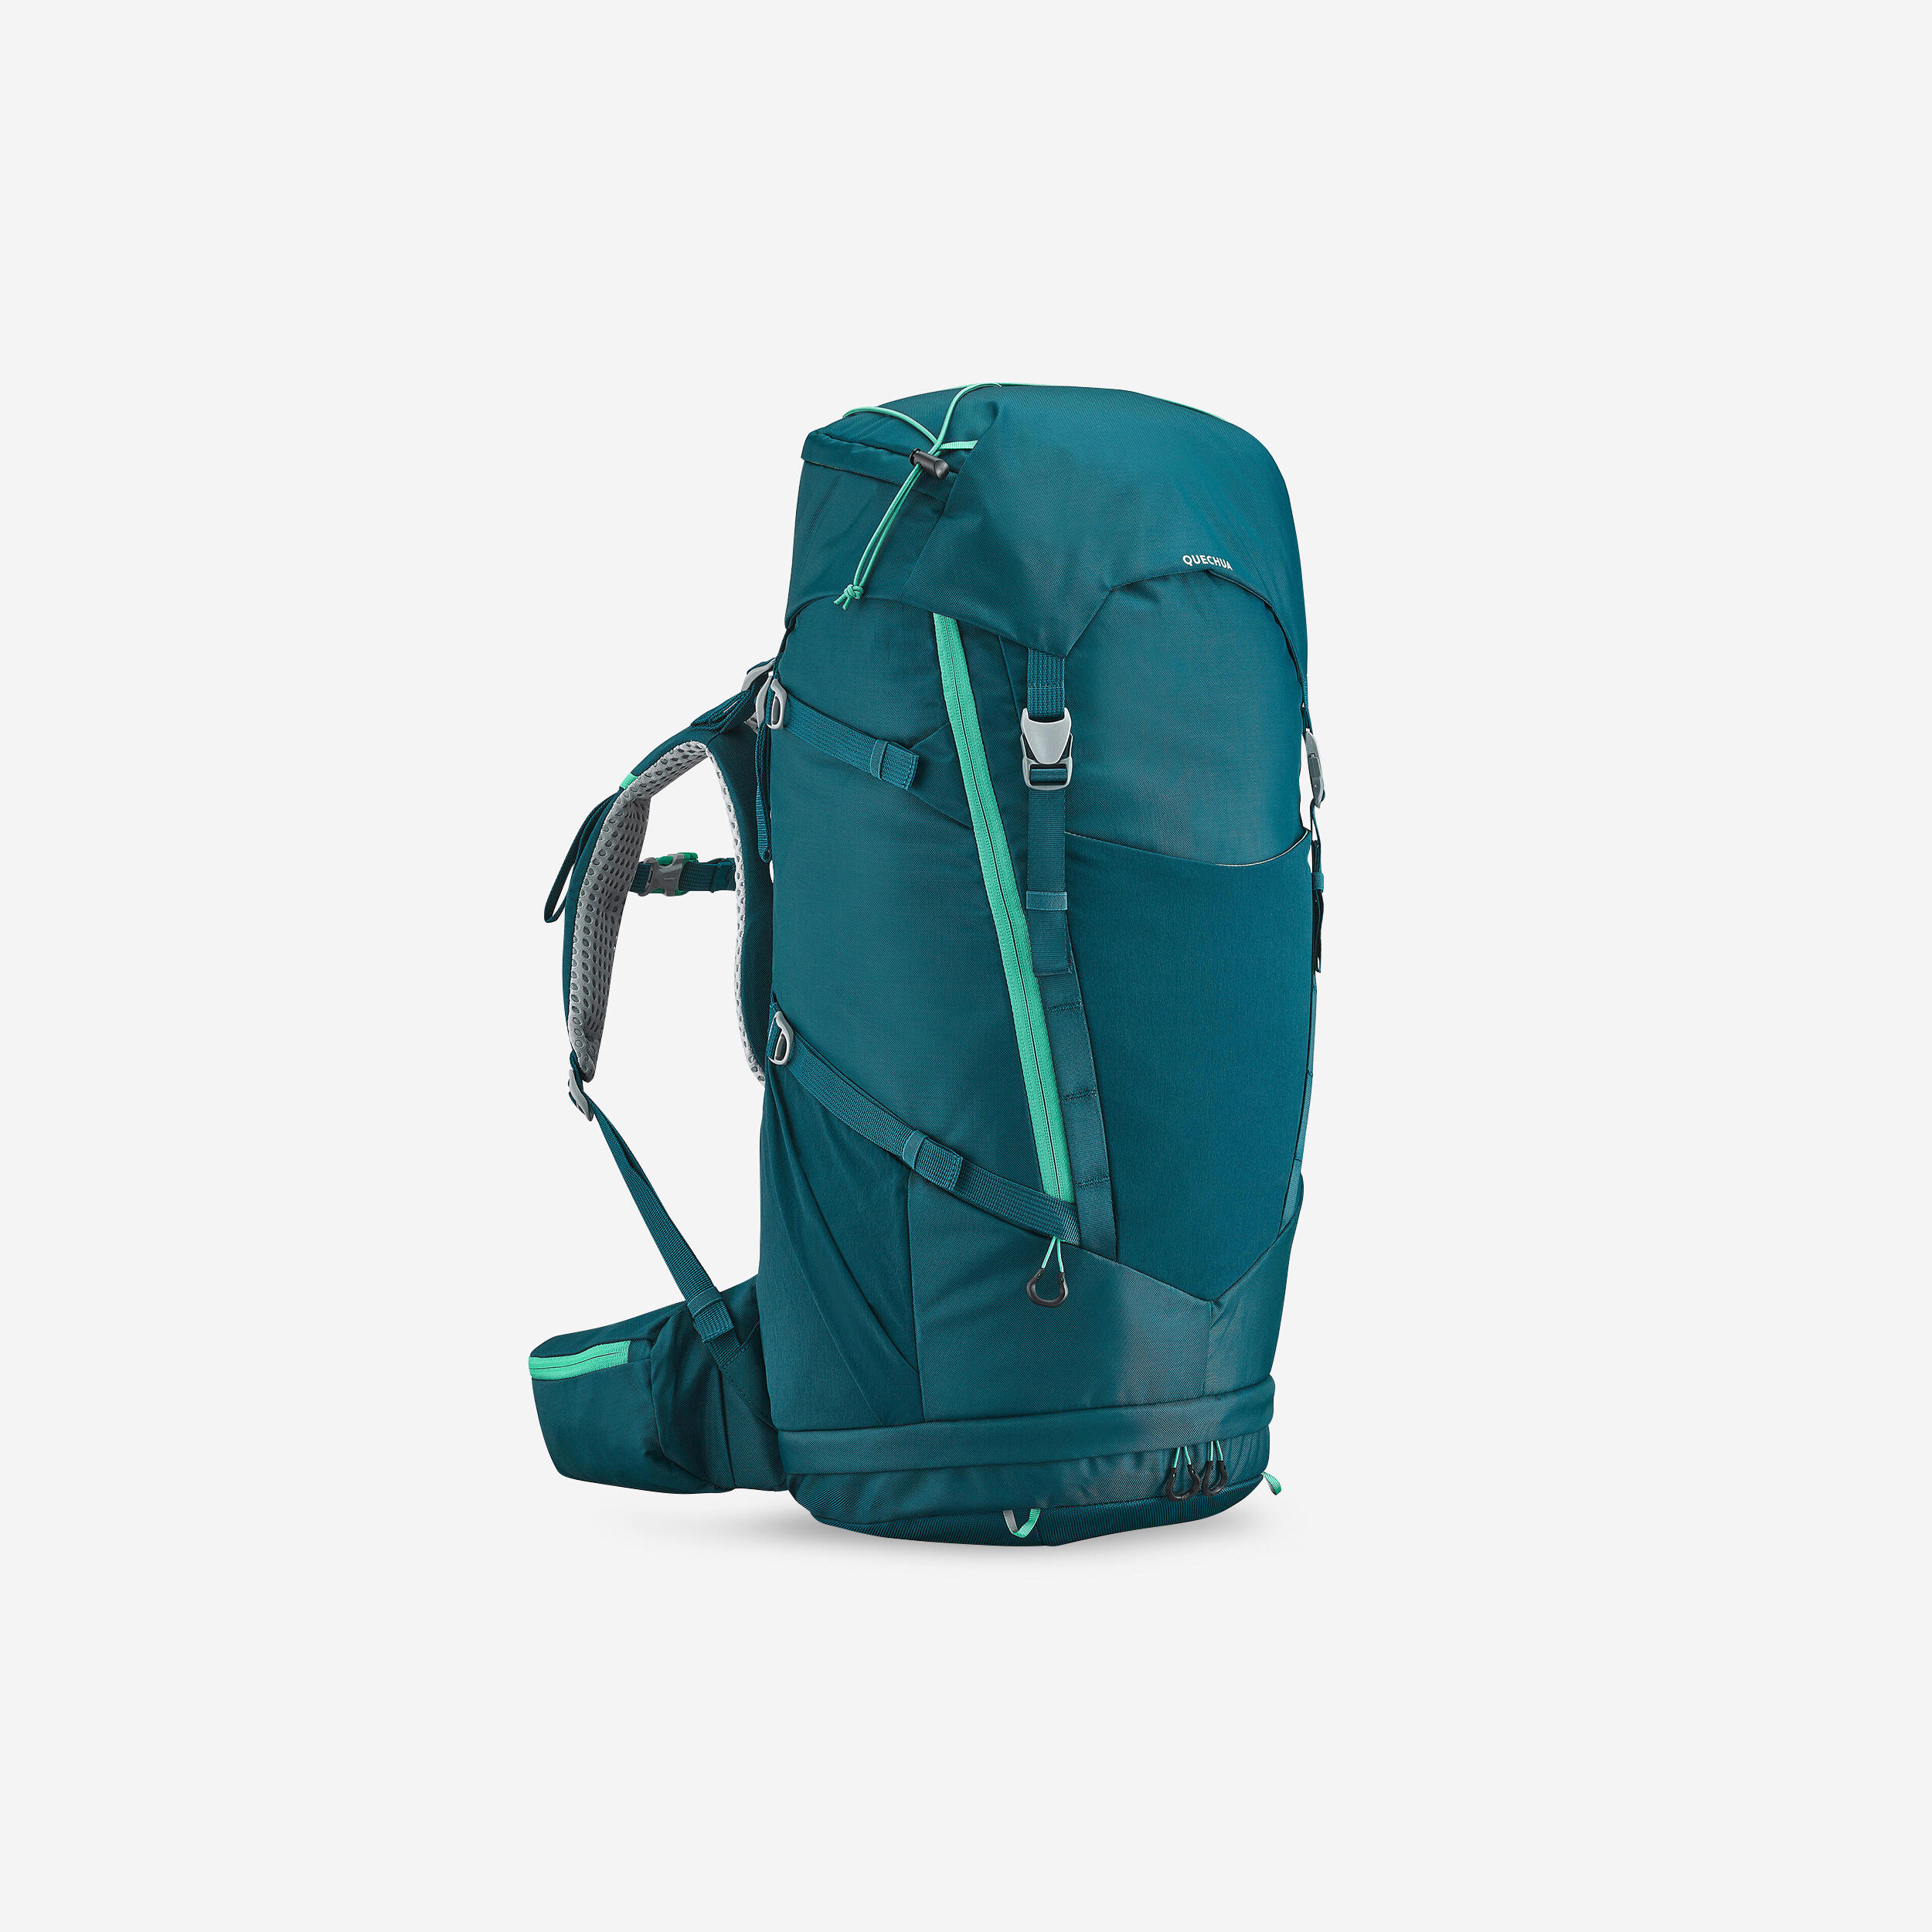 Kids’ Hiking Backpack 40 + 10 L - MH 500